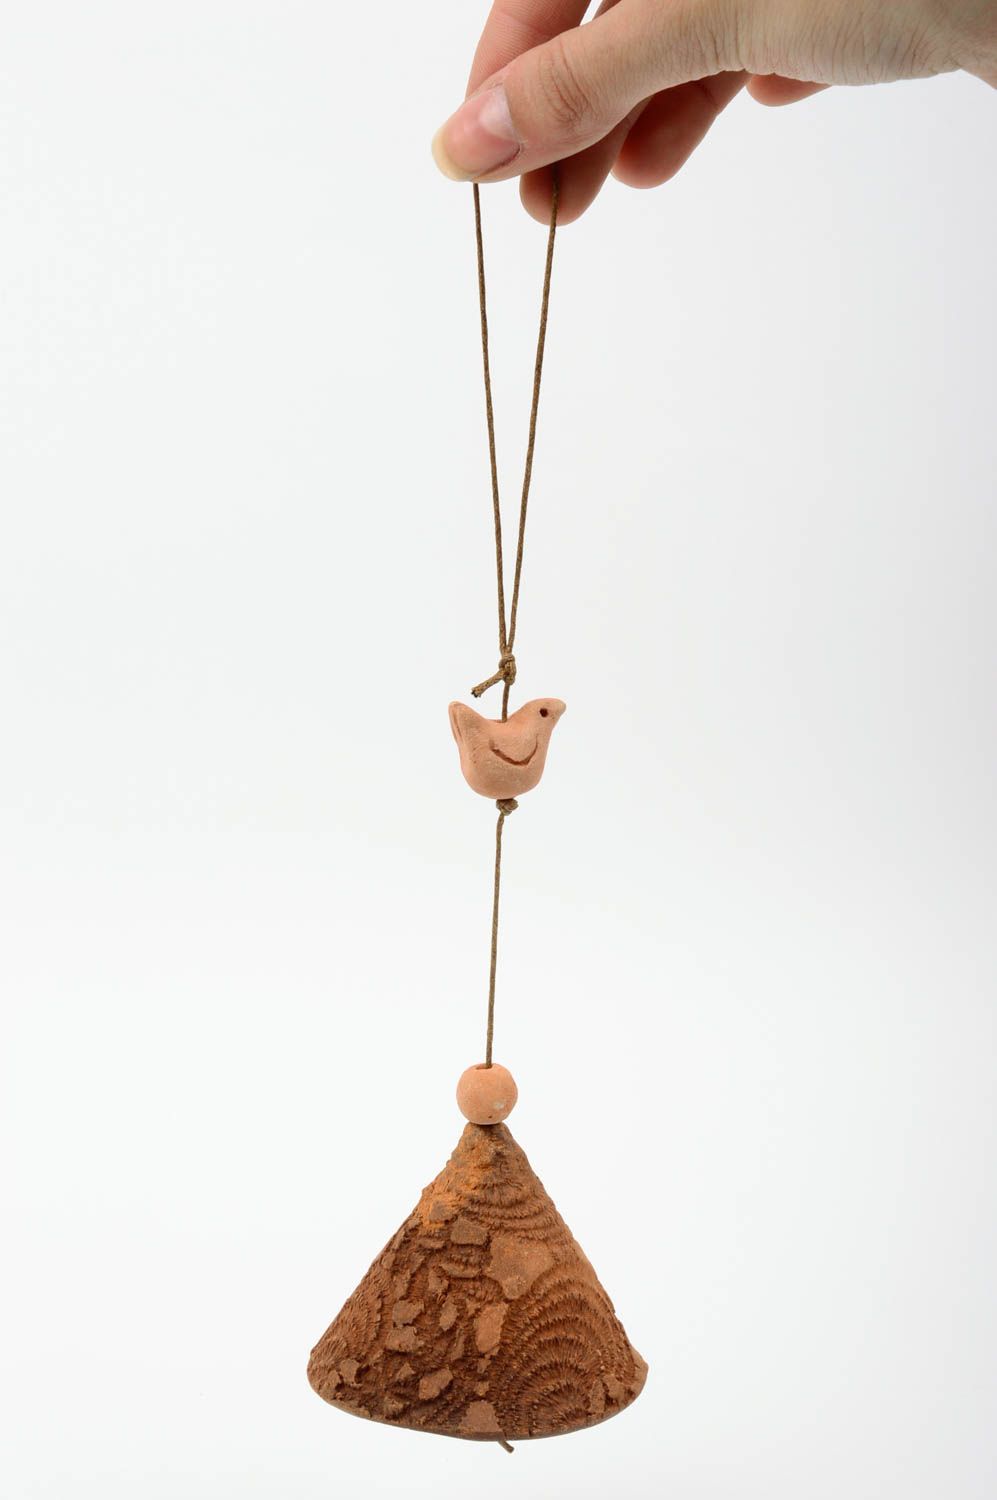 Авторский глиняный колокольчик ручной работы на шнурке украшенный птичкой фото 2